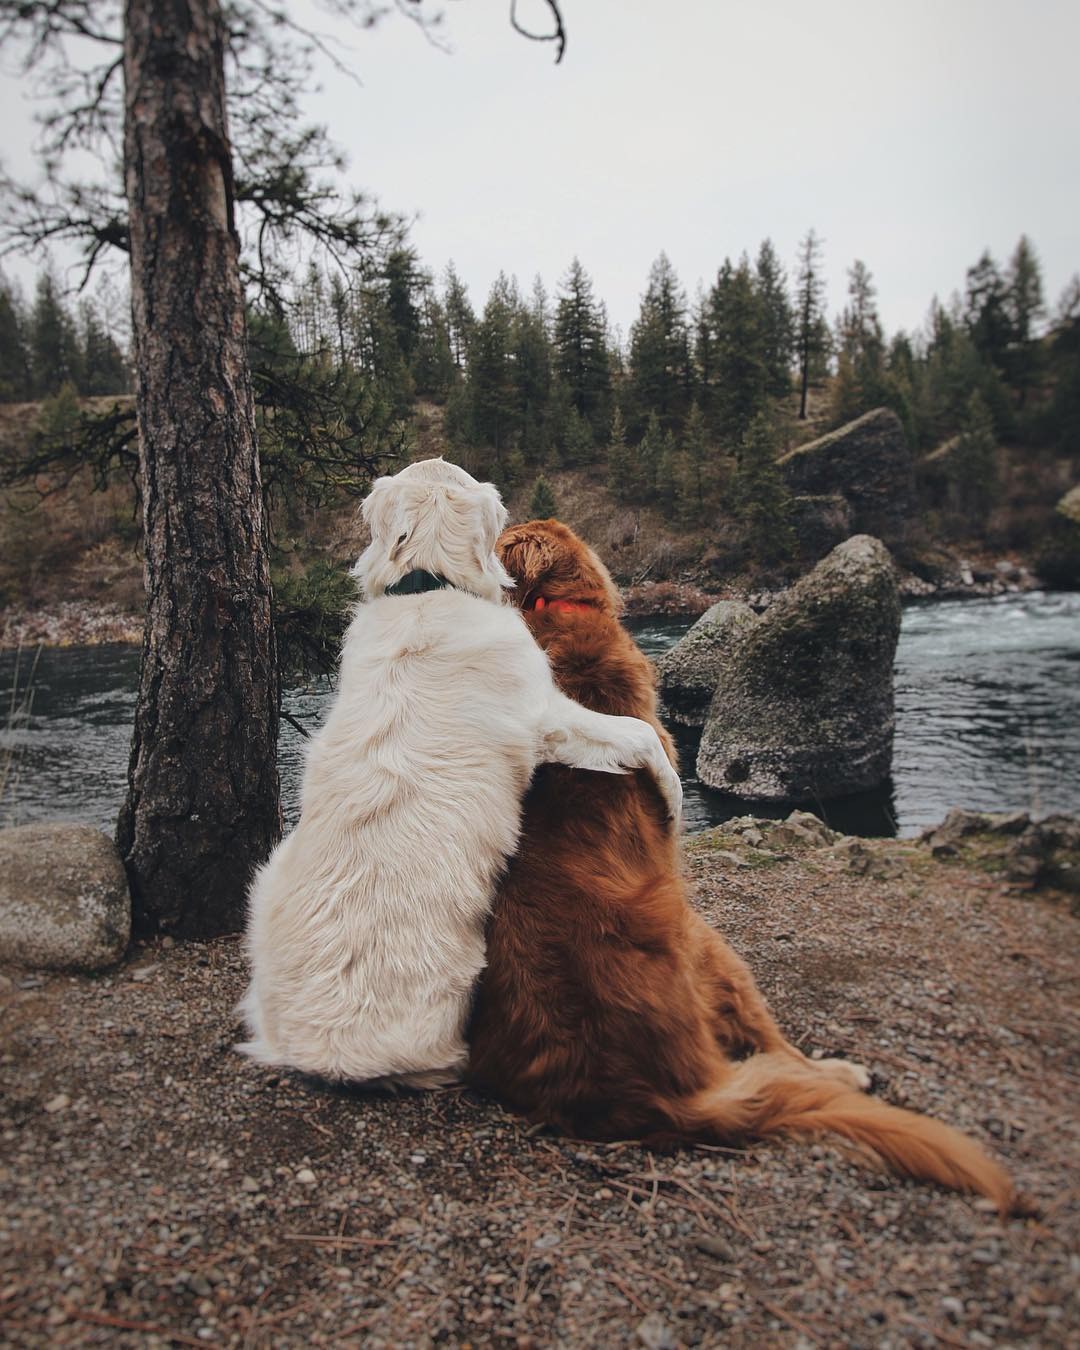 Thật tuyệt vời khi chứng kiến tình bạn đáng yêu giữa hai chú chó này. Xem họ dính chặt lấy nhau sẽ giúp bạn cảm thấy thoải mái và được làm mới. Hãy xem và cảm nhận sự đáng yêu từ đội bạn nhỏ này!